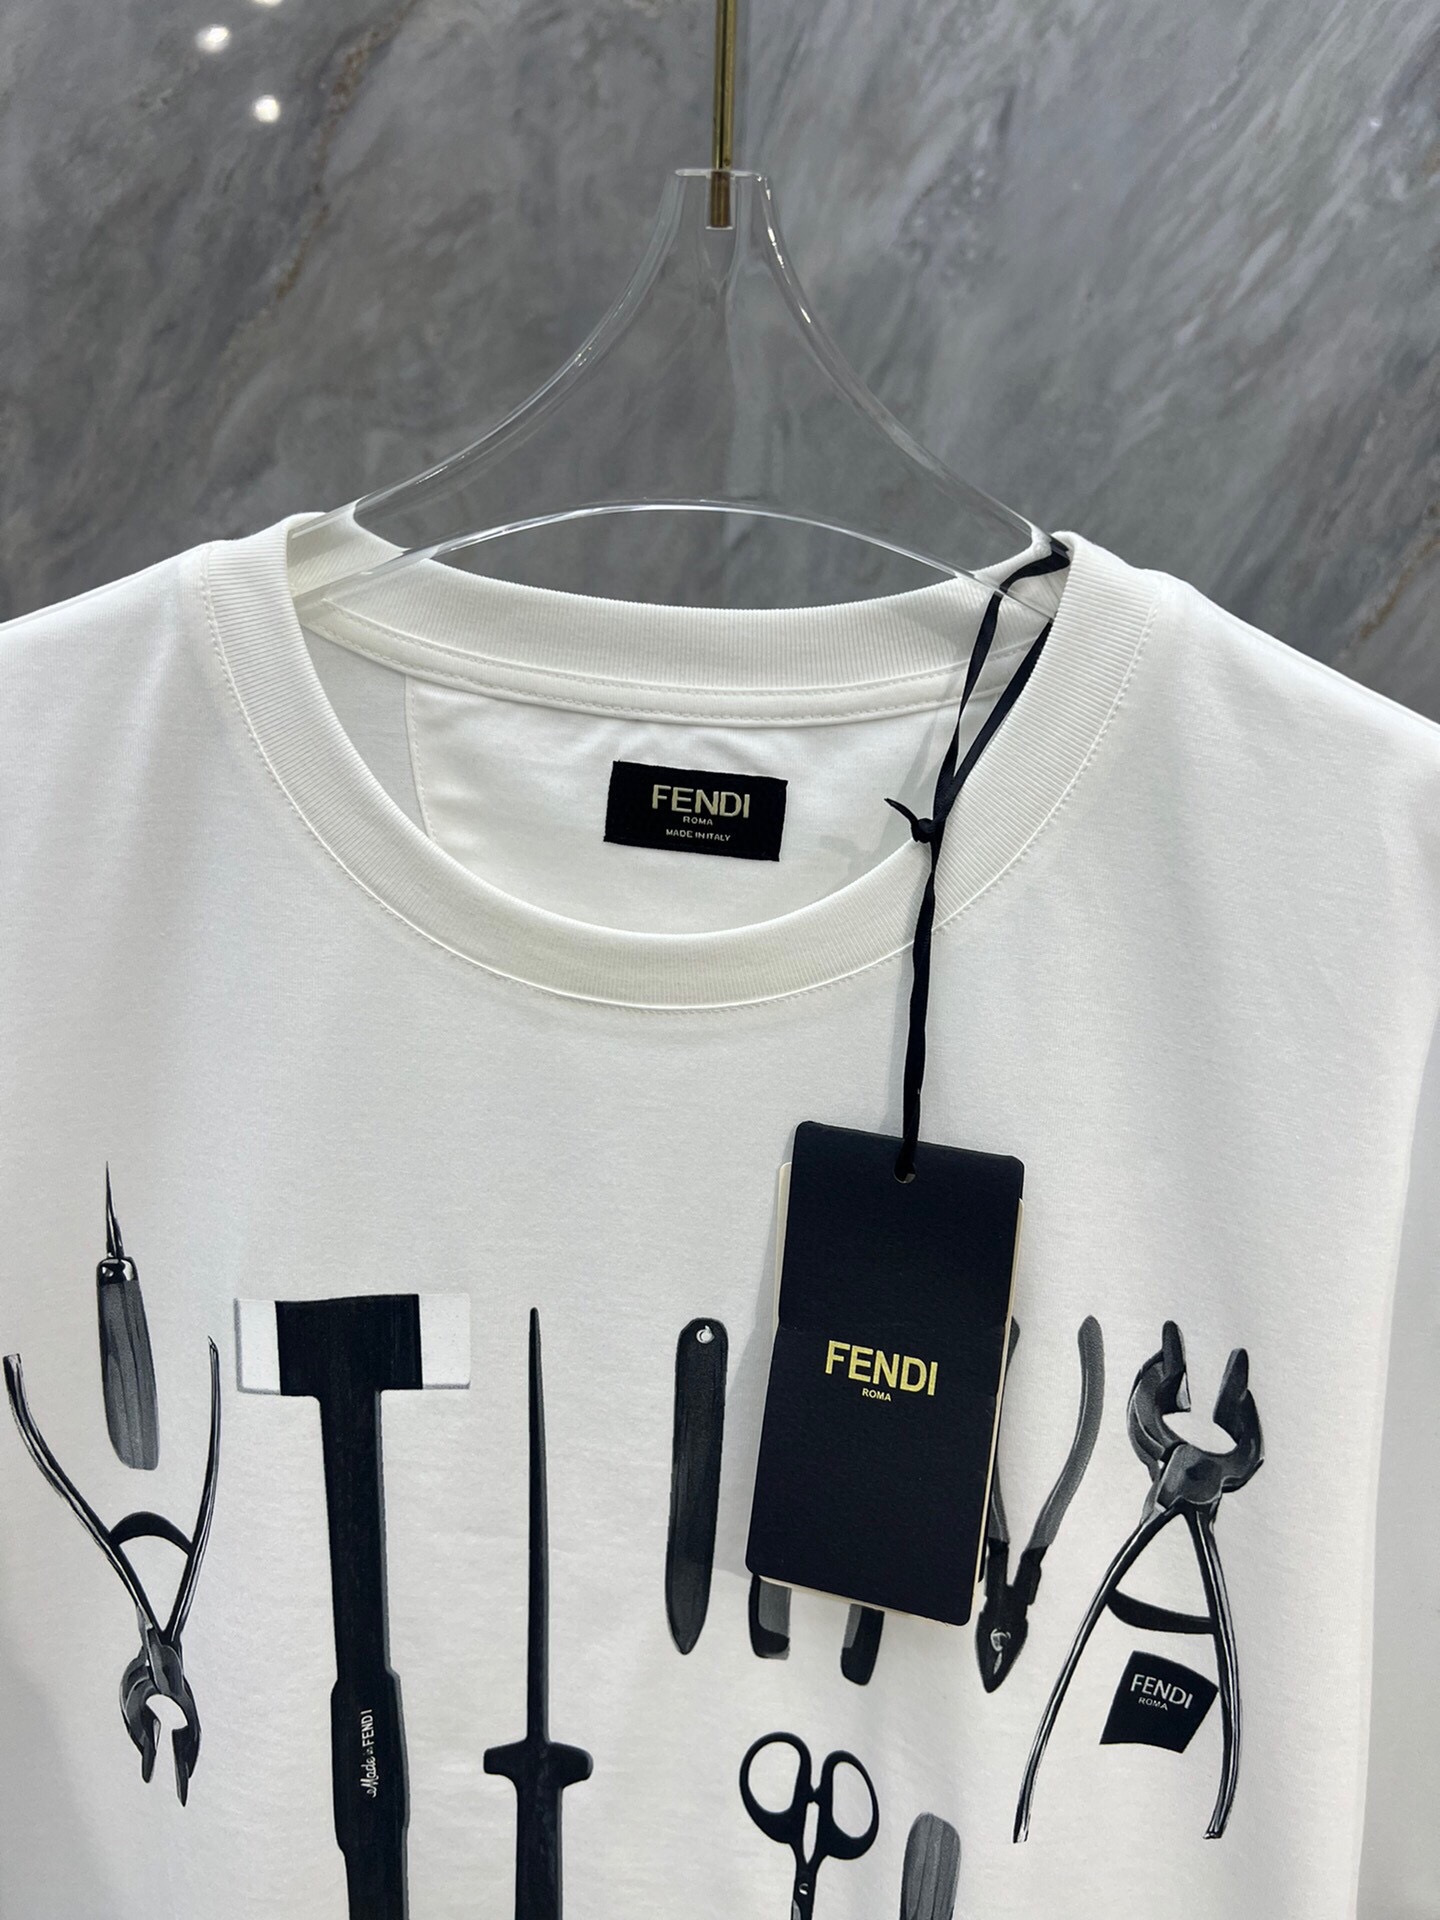 Fendi/芬迪24ss男装饰数码印花工具图案圆领短袖T恤正面饰有FENDI工具图案描绘FENDI工匠所